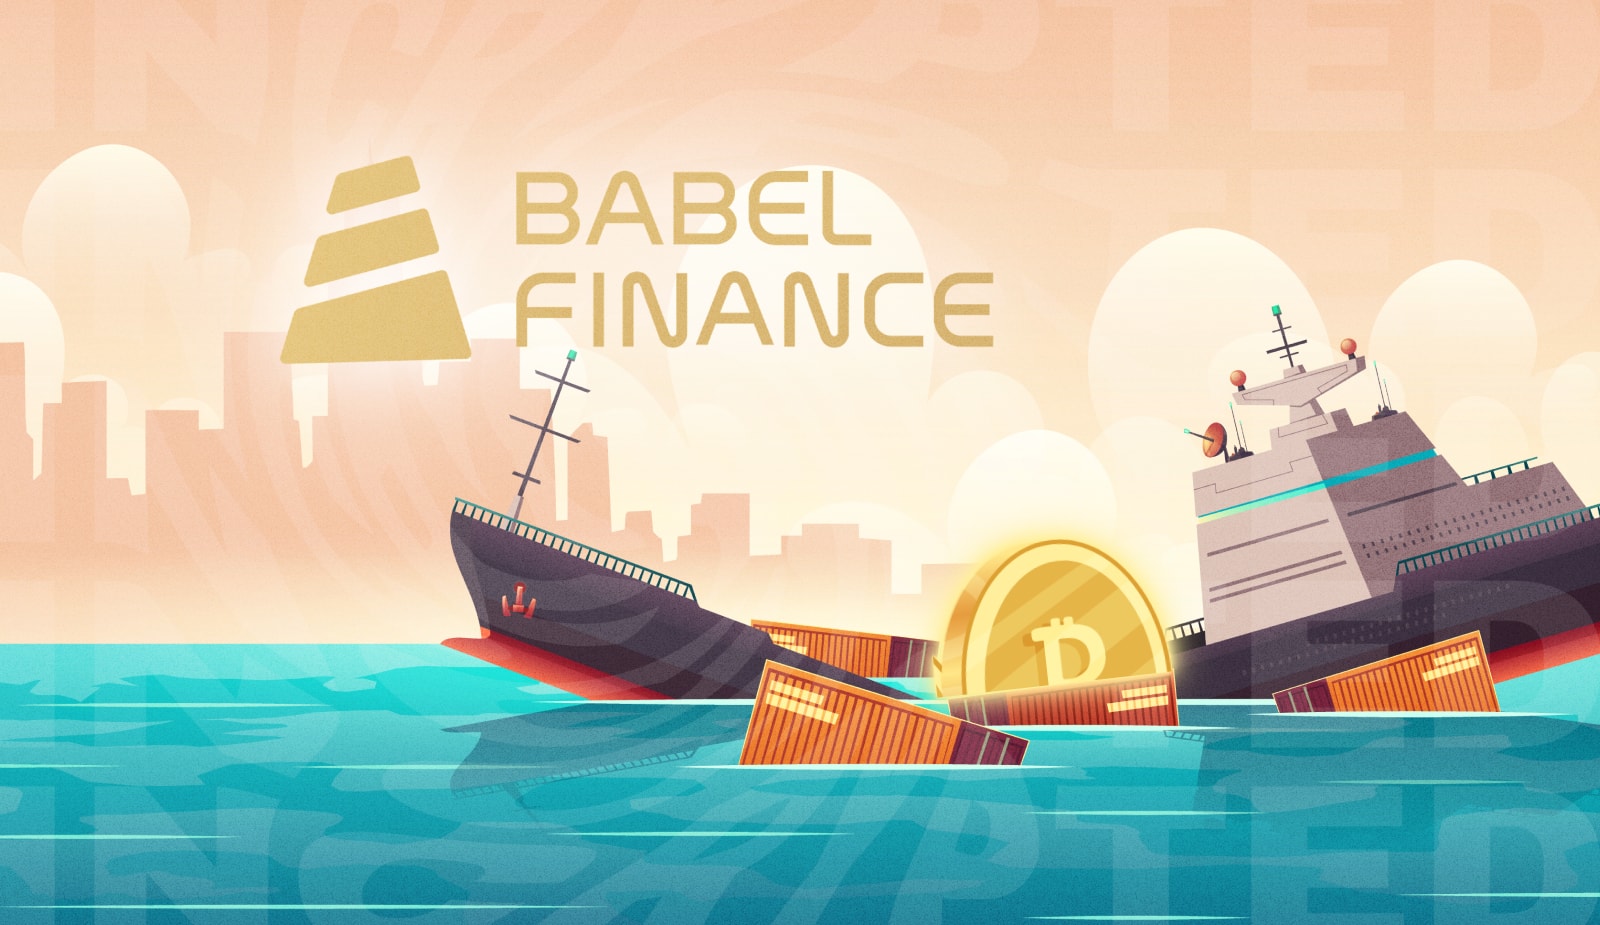 В июне Babel Finance потеряла 280 млн долларов клиентских средств. Заглавный коллаж новости.